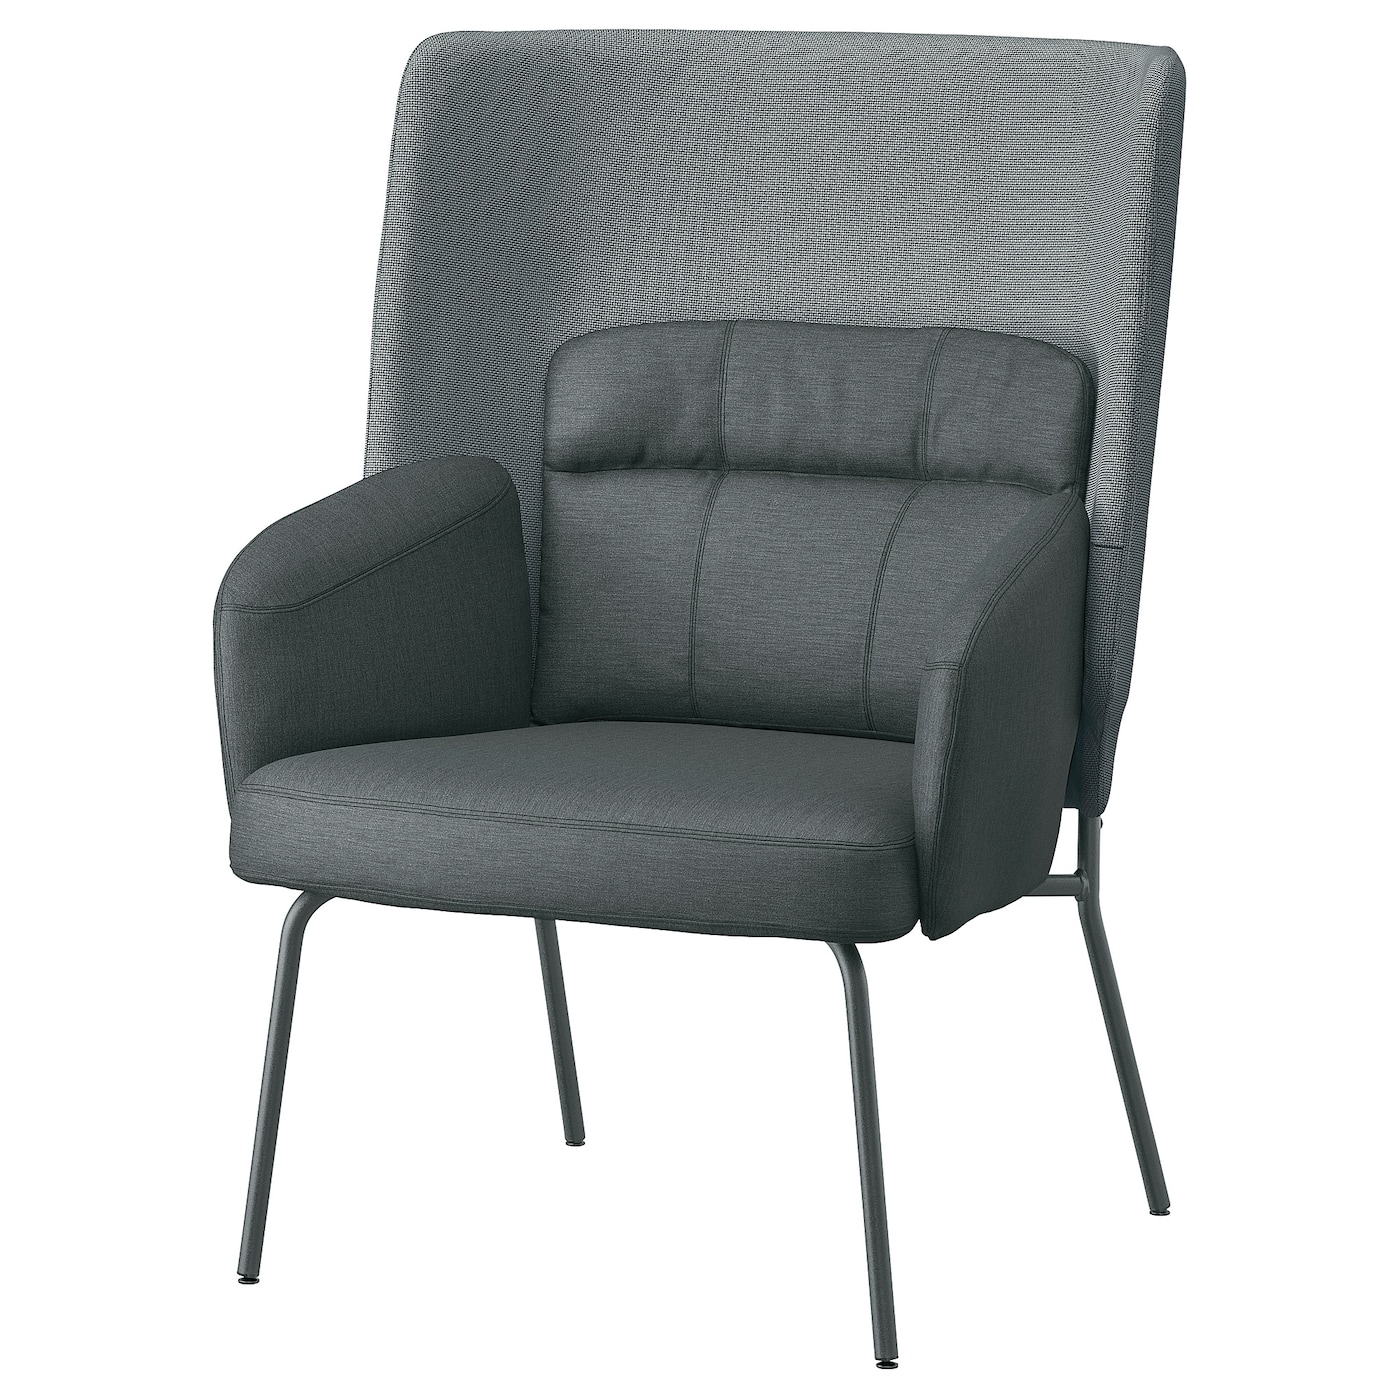 БИНГСТА Кресло с высокой спинкой, Виссле темно-серый/Кабуса темно-серый BINGSTA IKEA кресло olss престиж темно серый в 40